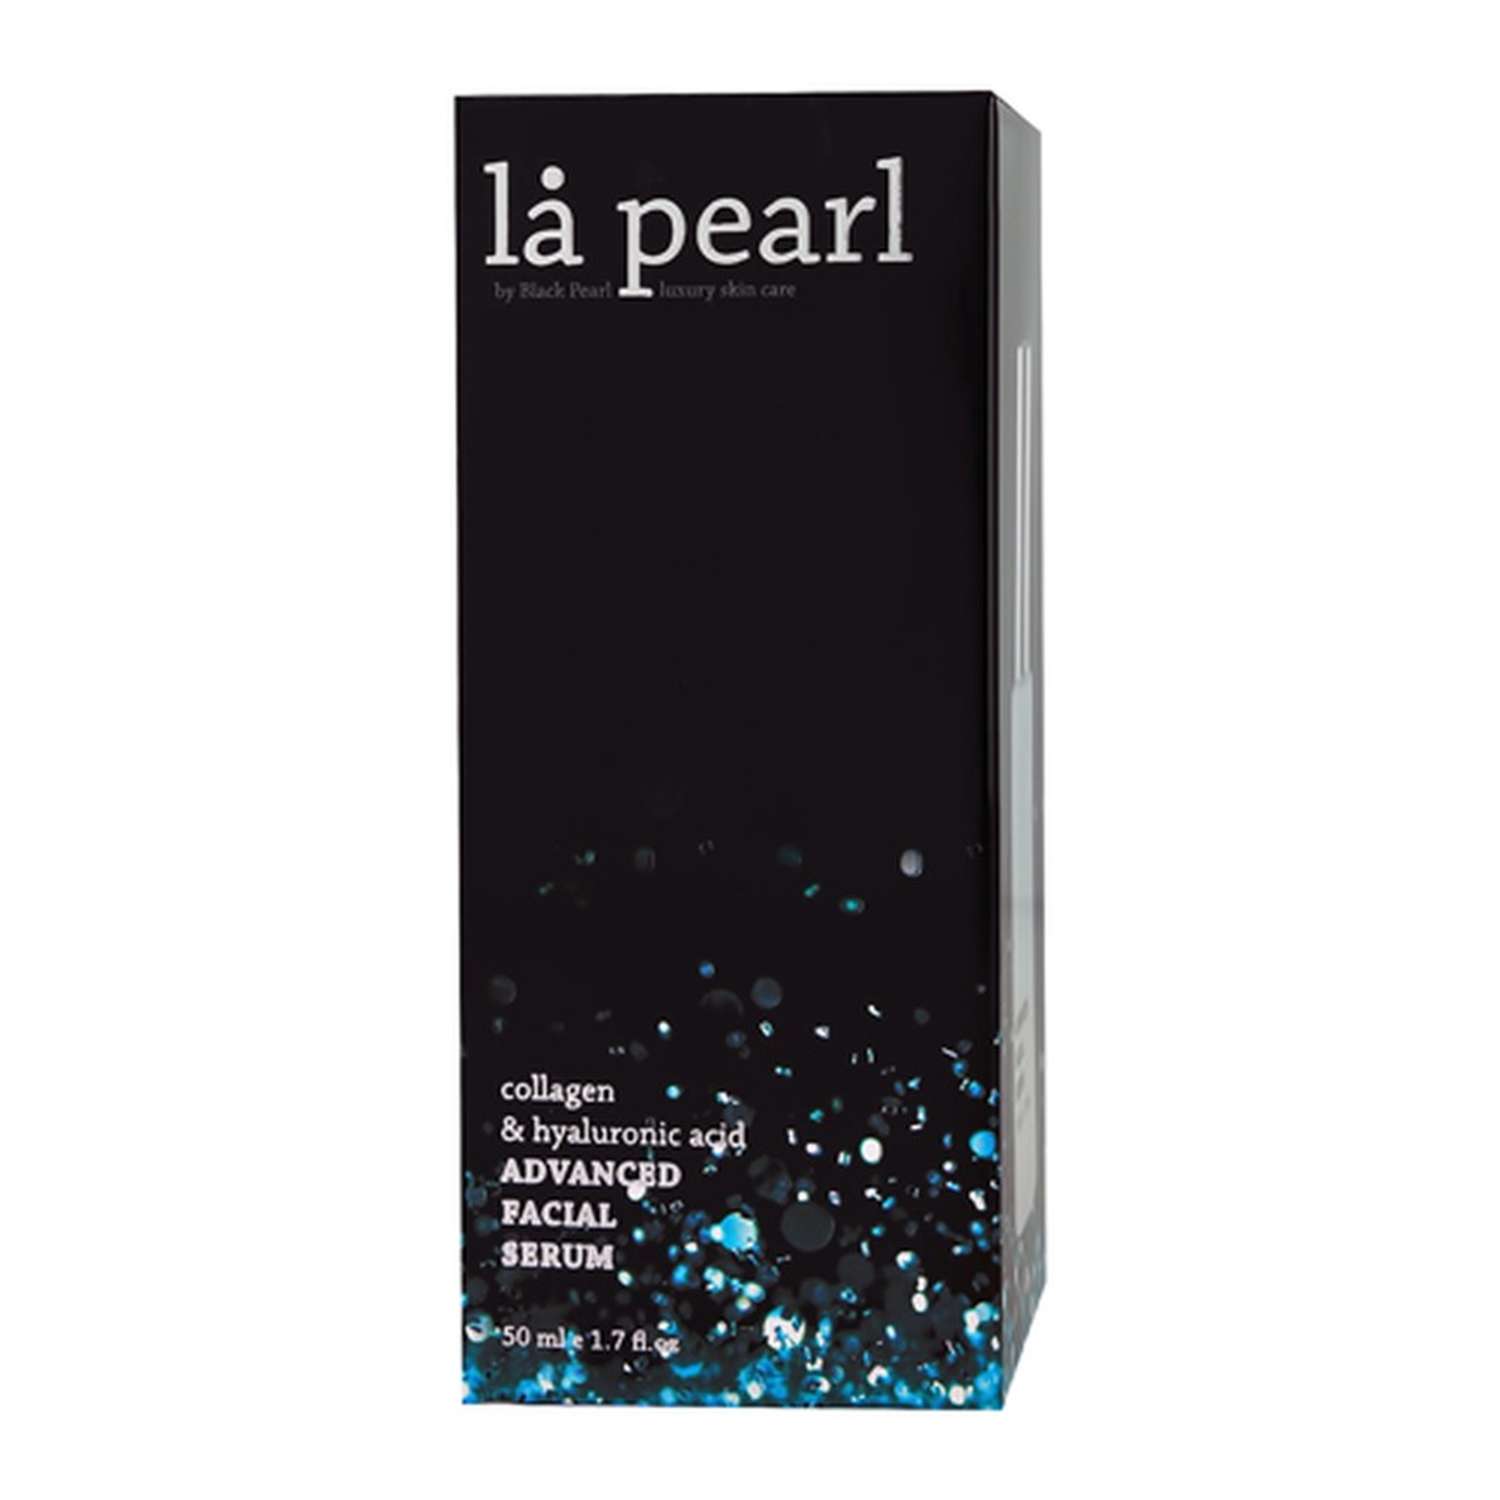 Сыворотка для лица Sea of Spa La pearl с коллагеном и гиалуроновой кислотой 50 мл - фото 5